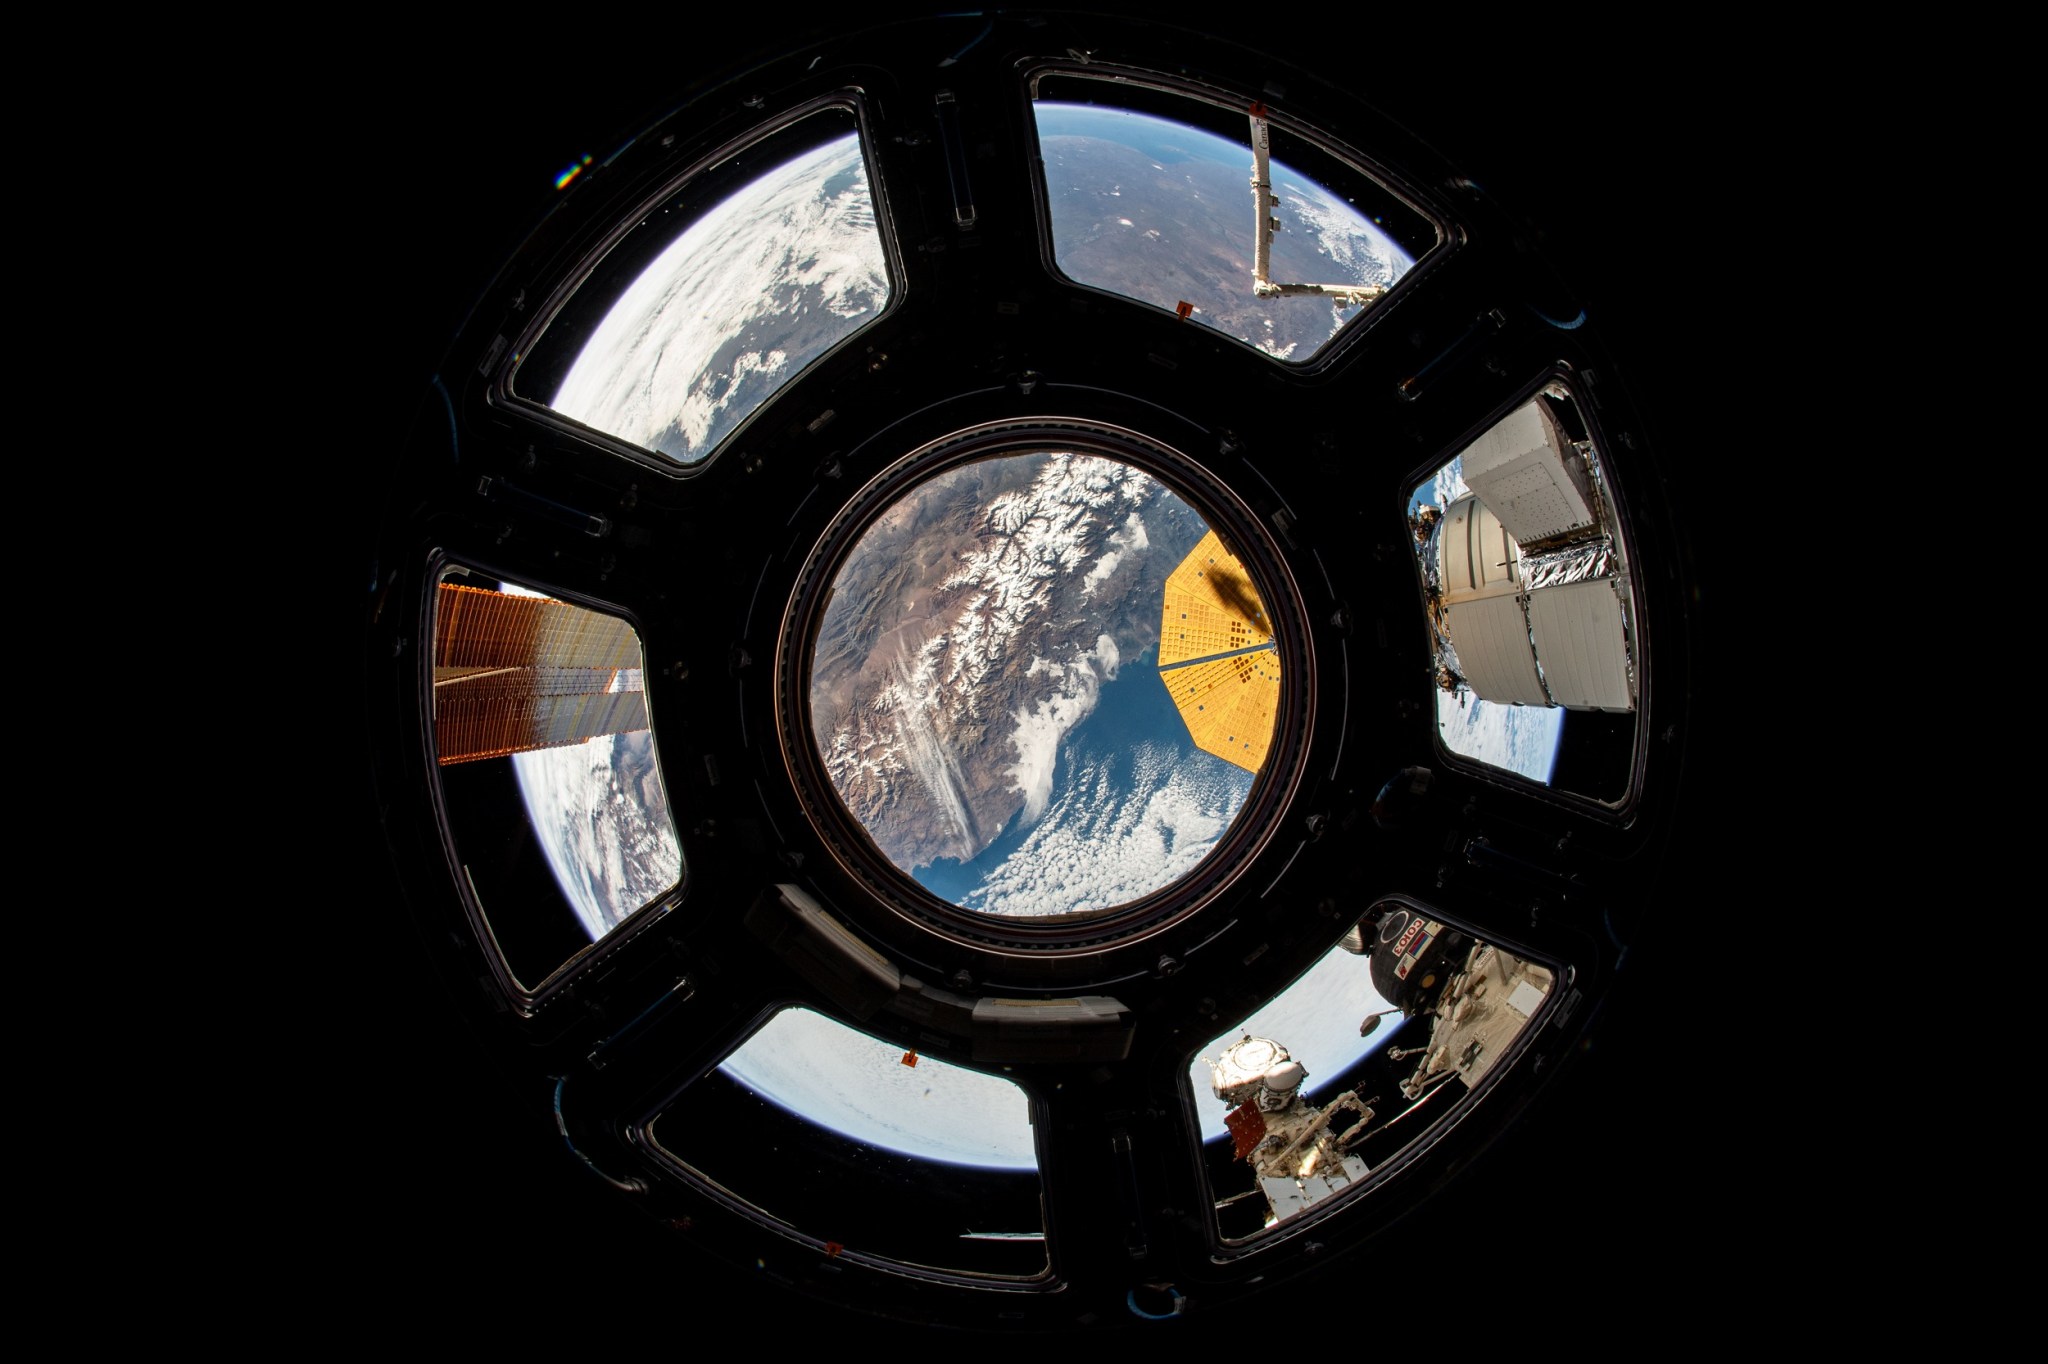 La costa occidental de Chile es visible a través de la ventana central de la cúpula. Se puede ver un panel solar a través de una ventana a la izquierda y, en el centro, una parte del panel solar en forma de platillo de Northrop Grumman. El segmento de Roscosmos de la estación es visible en la parte inferior derecha.